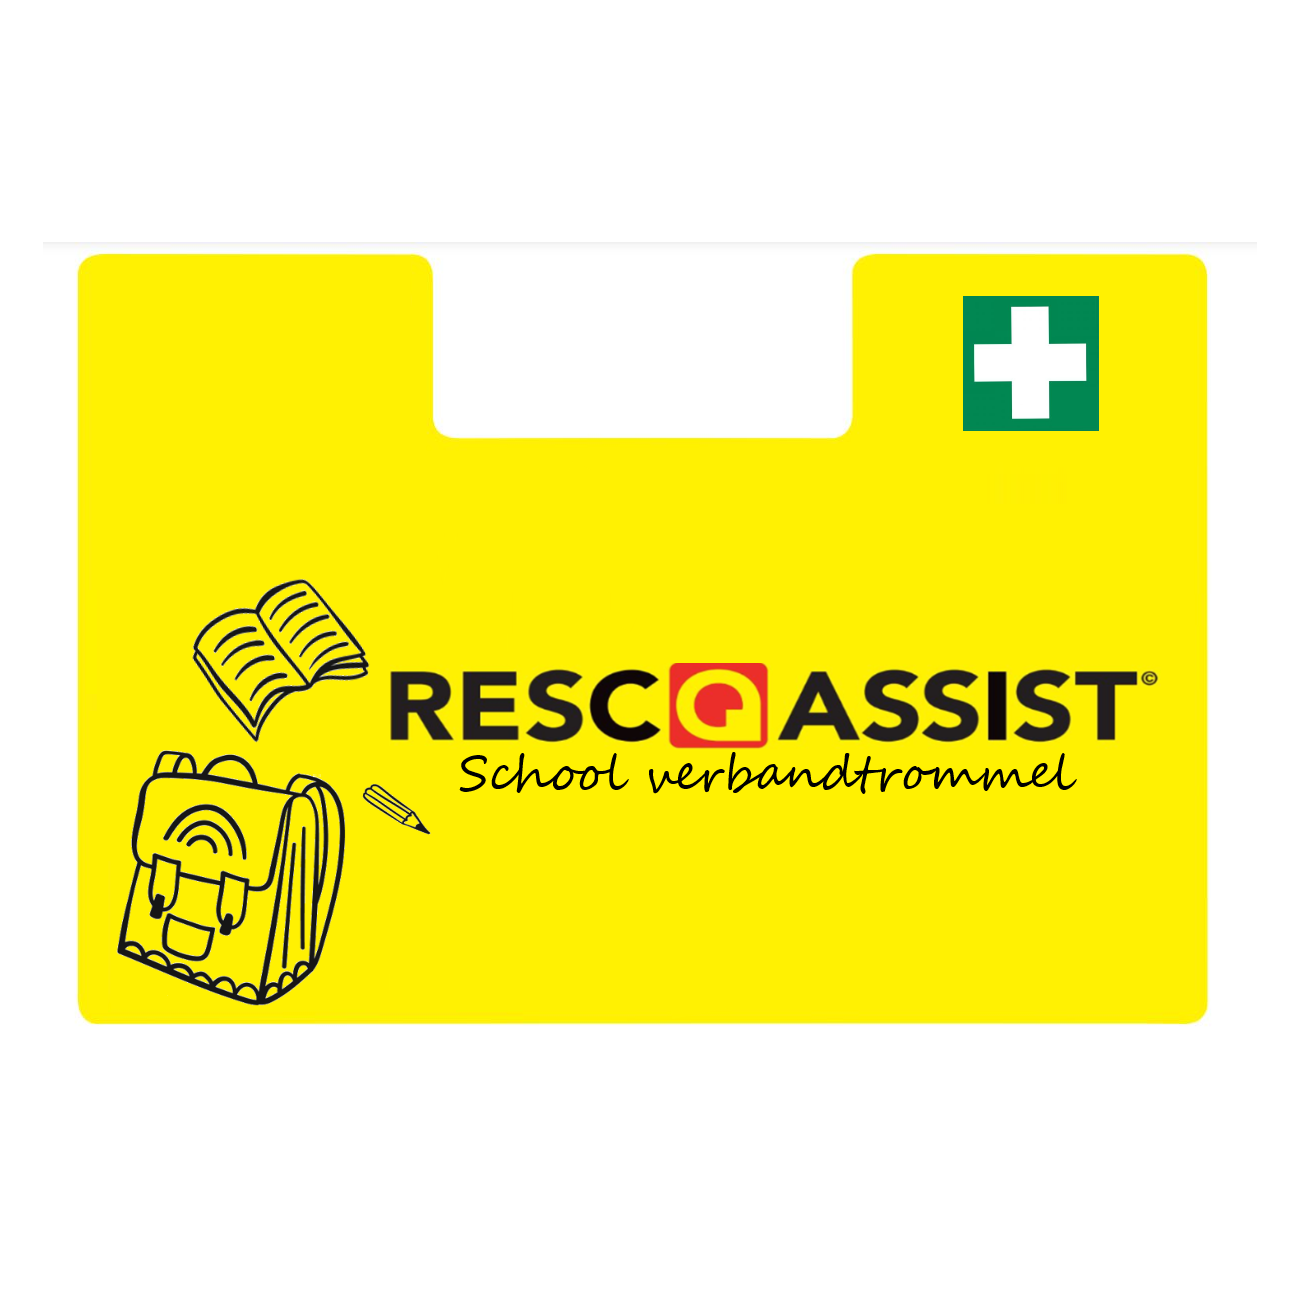 Resc-Q-Assist Verbandtrommel School DIN